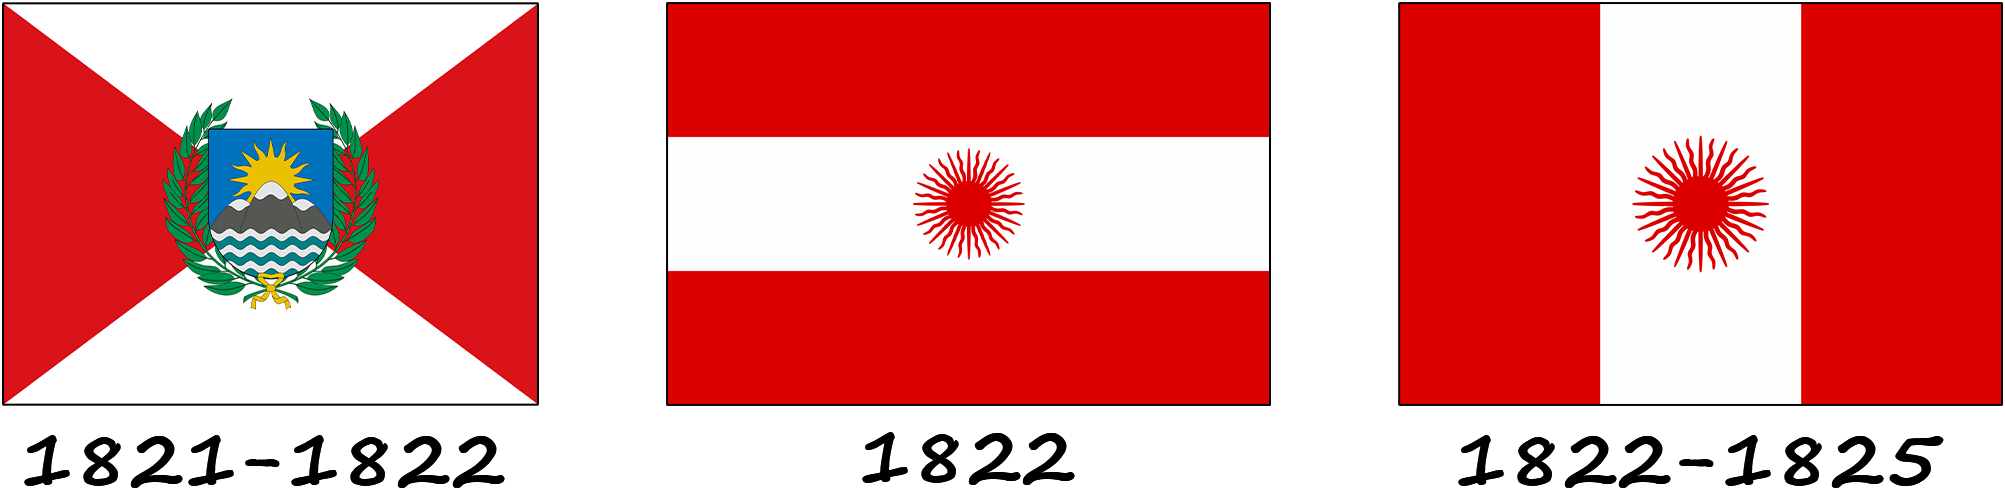 Історія прапора Перу